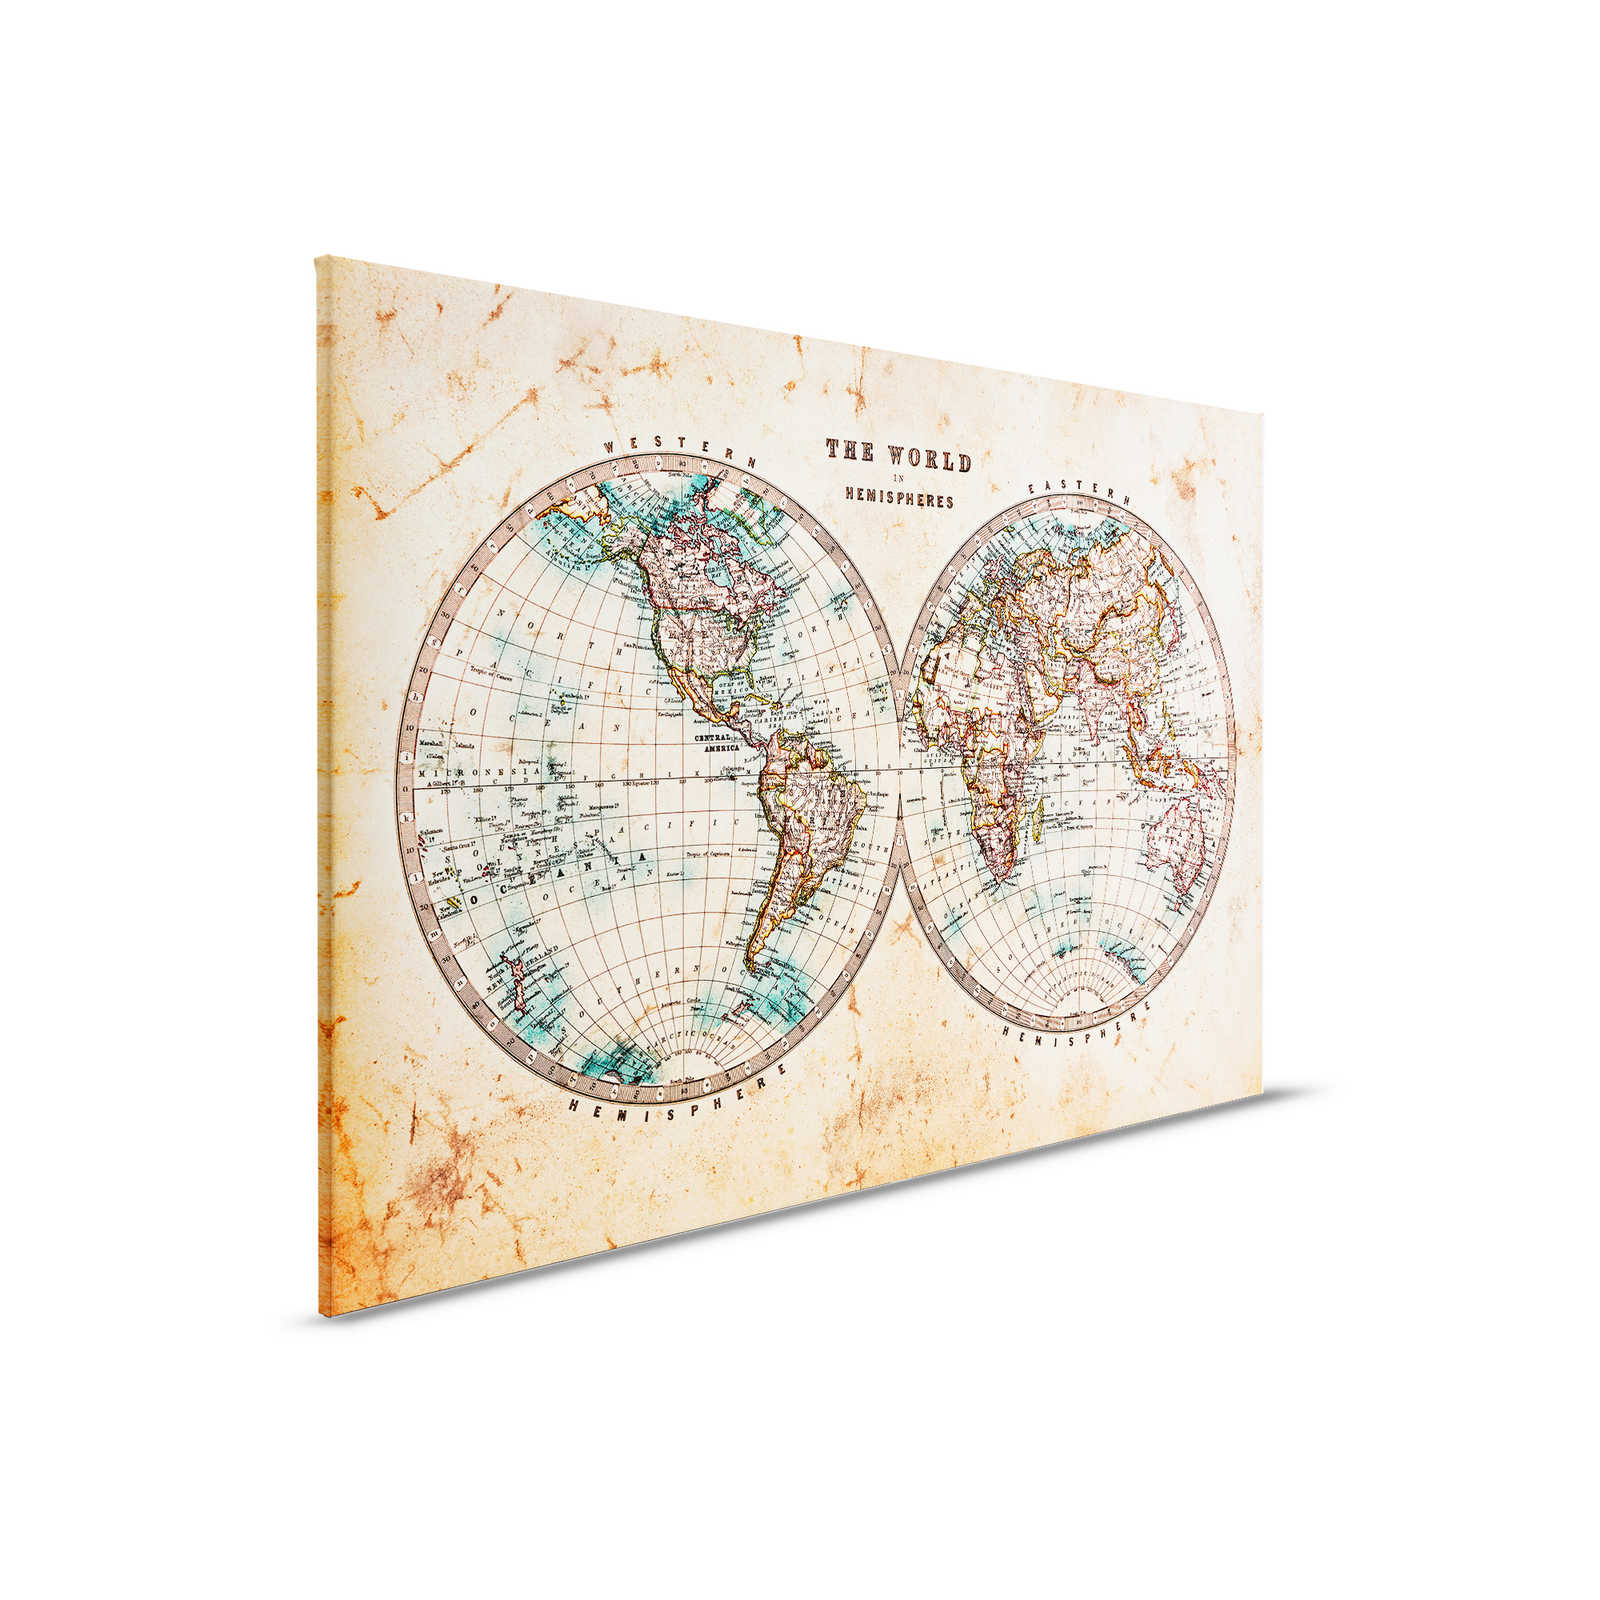         Leinwand mit Vintage Weltkarte in Hemisphären | braun, beige, blau – 0,90 m x 0,60 m
    